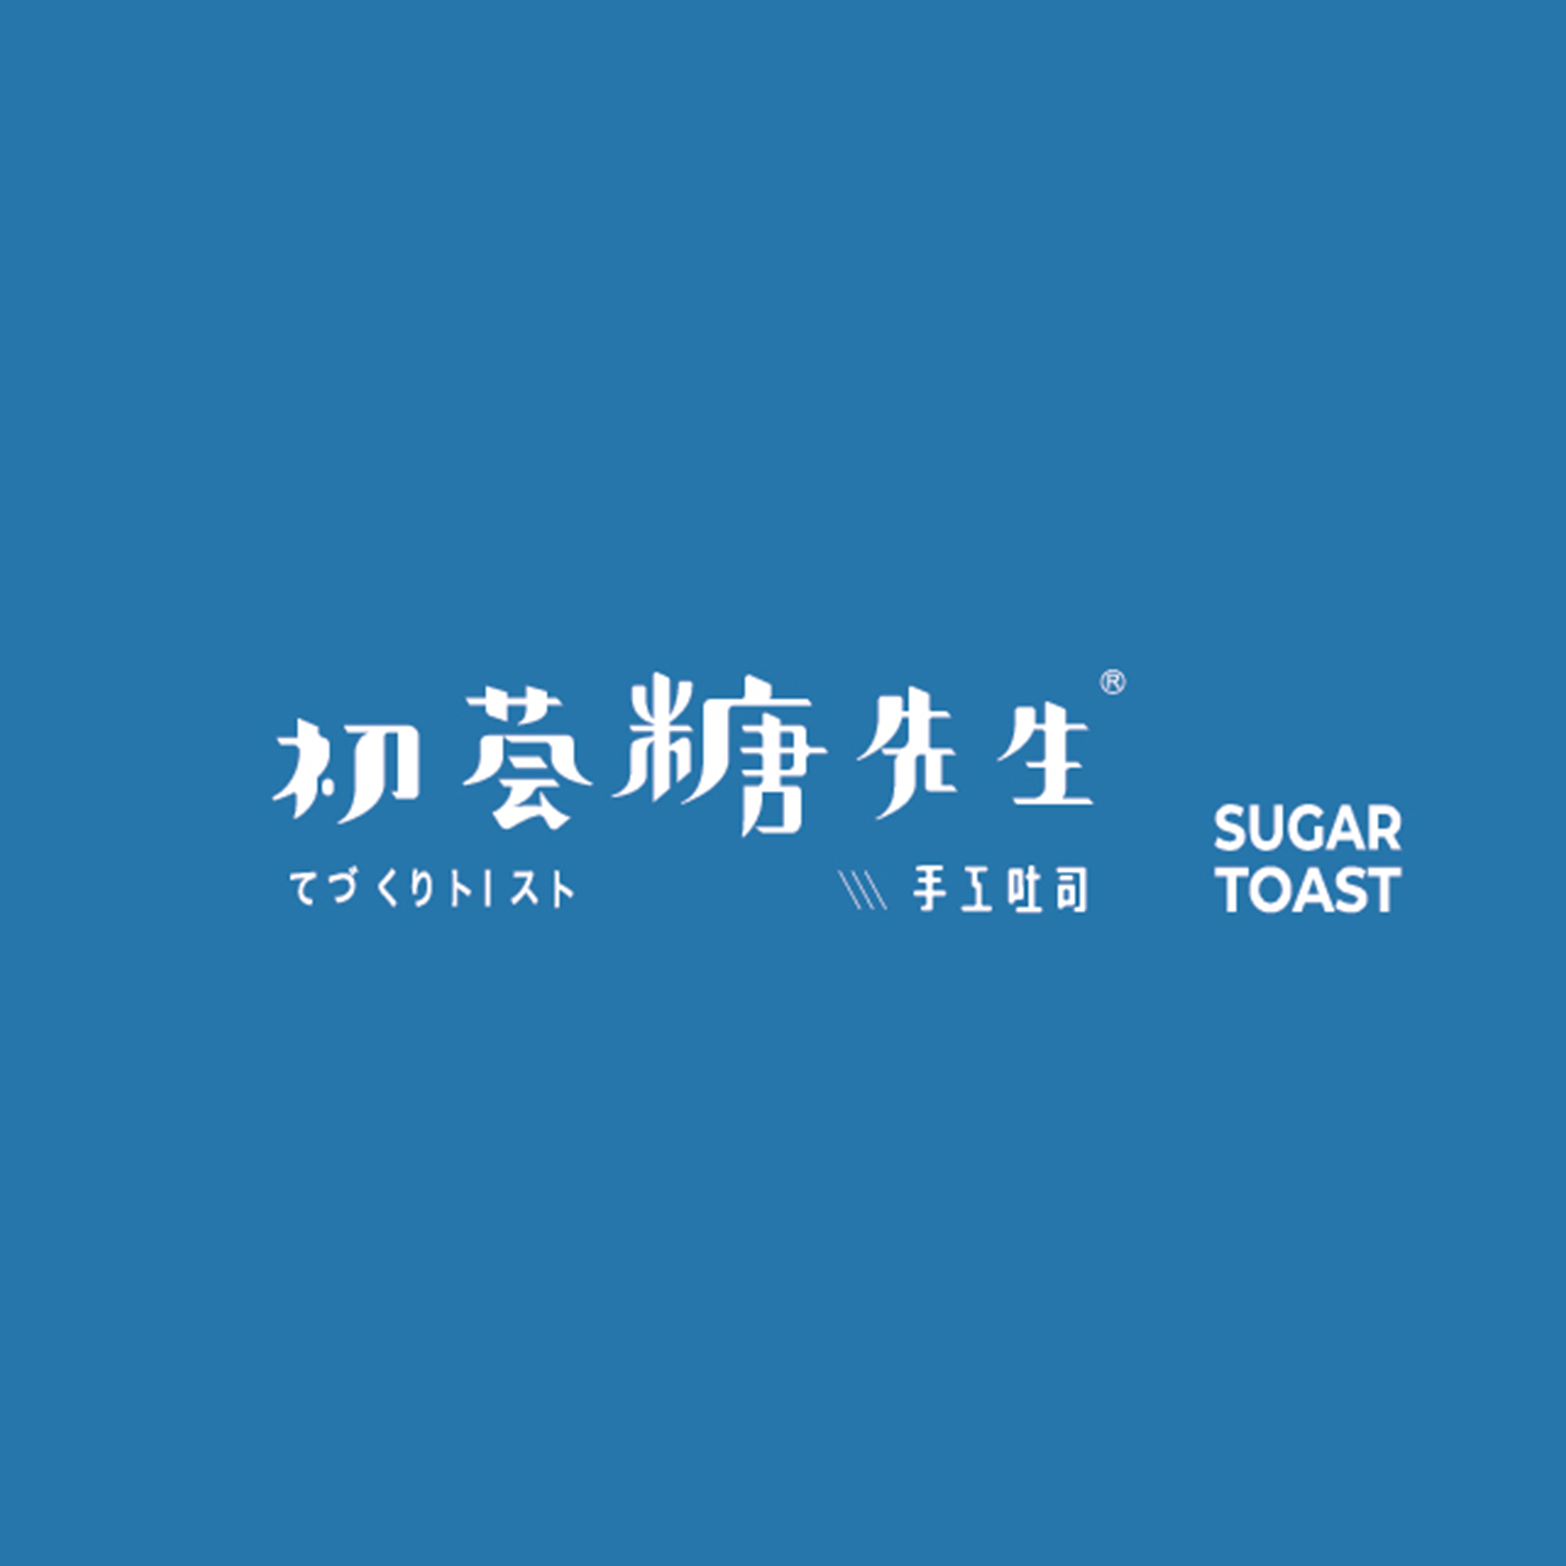 Sugar Toast - Logo